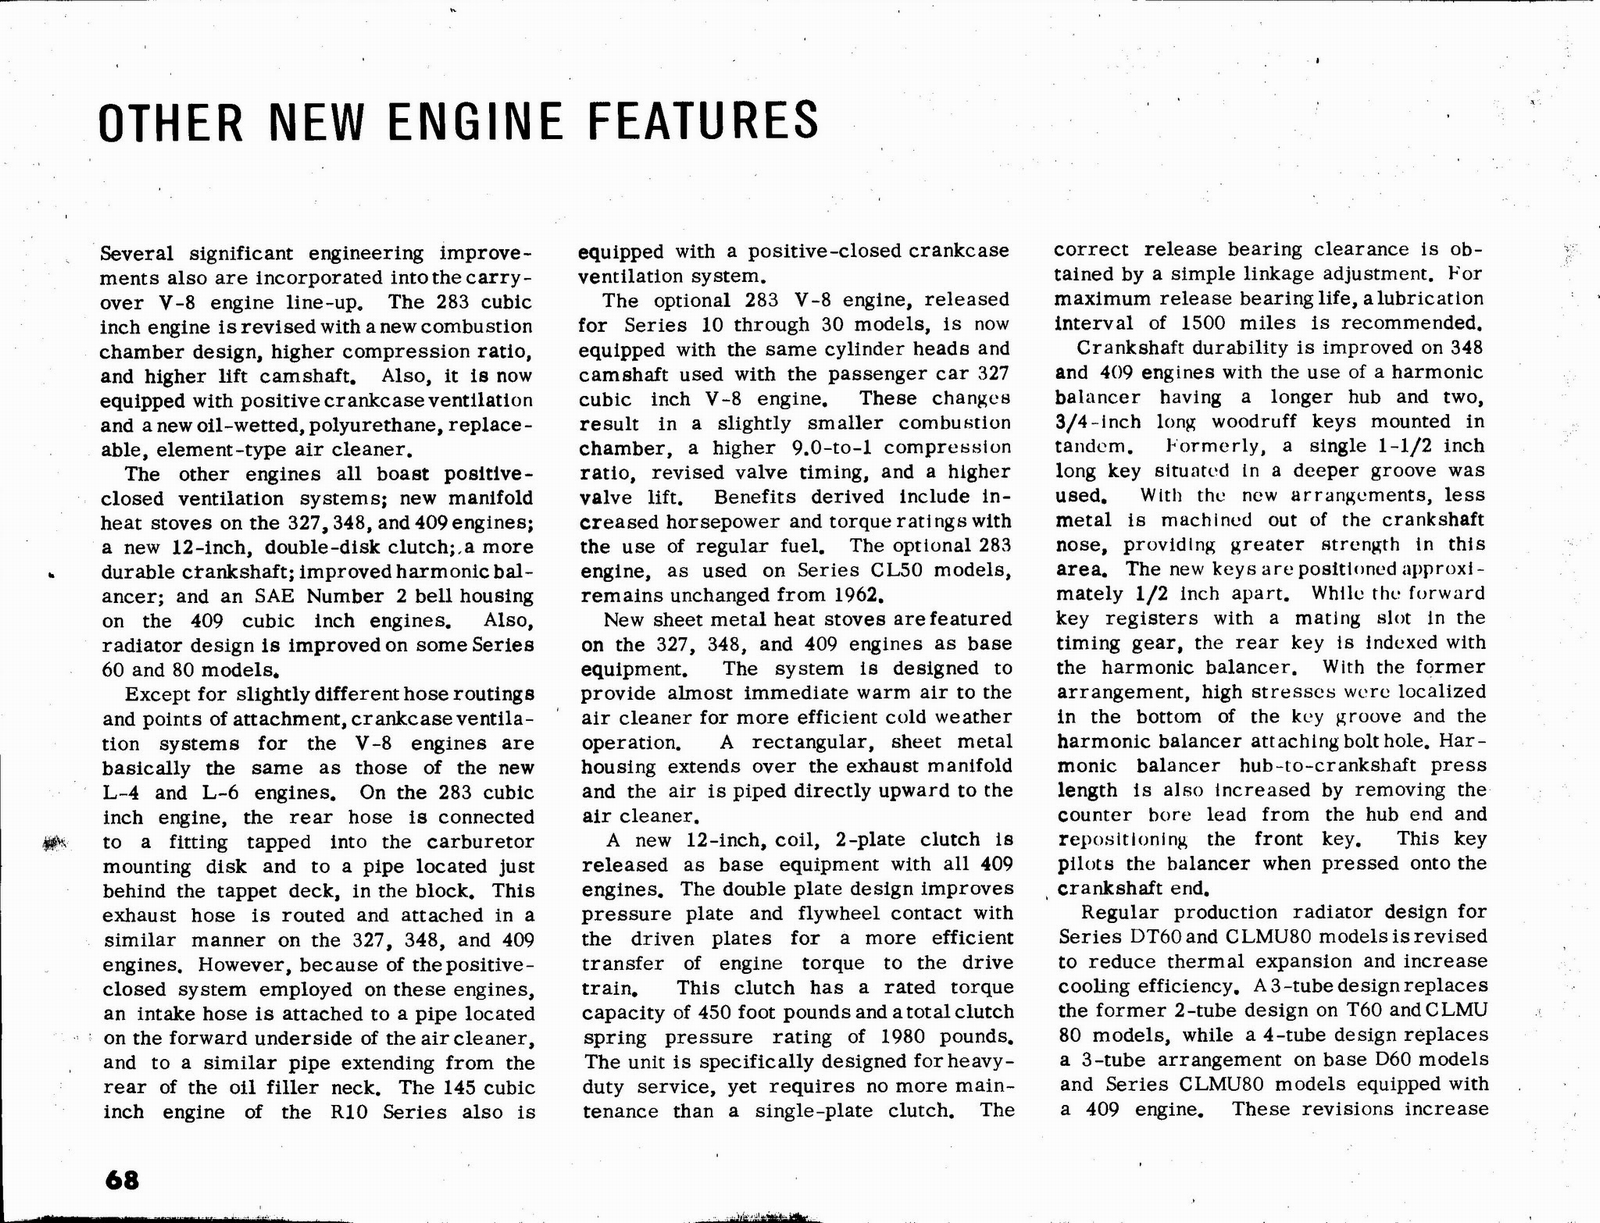 n_1963 Chevrolet Truck Engineering Features-68.jpg